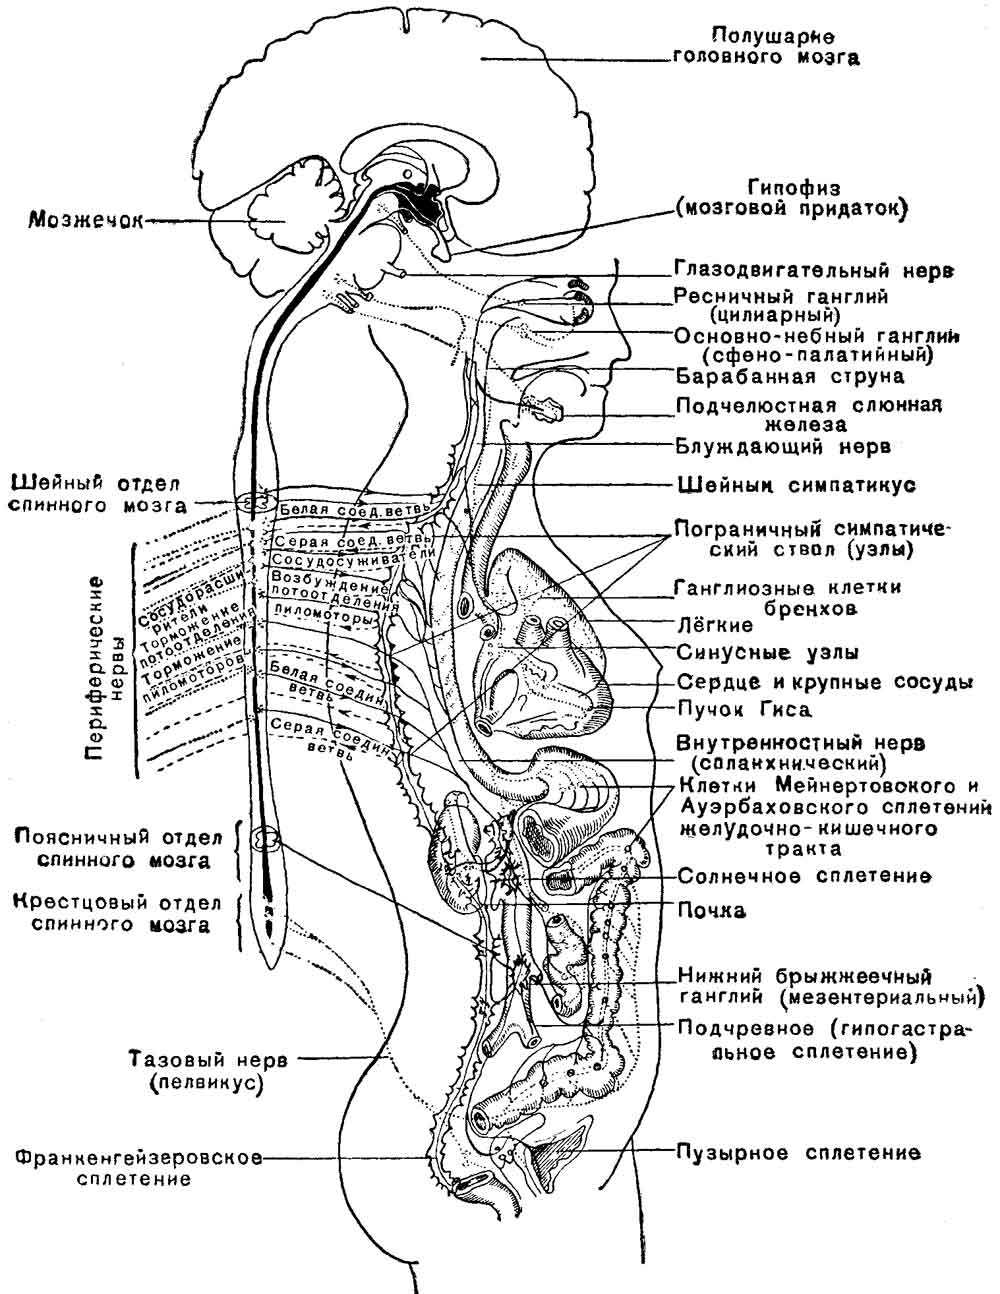 Схема общего плана строения вегетативной нервной системы